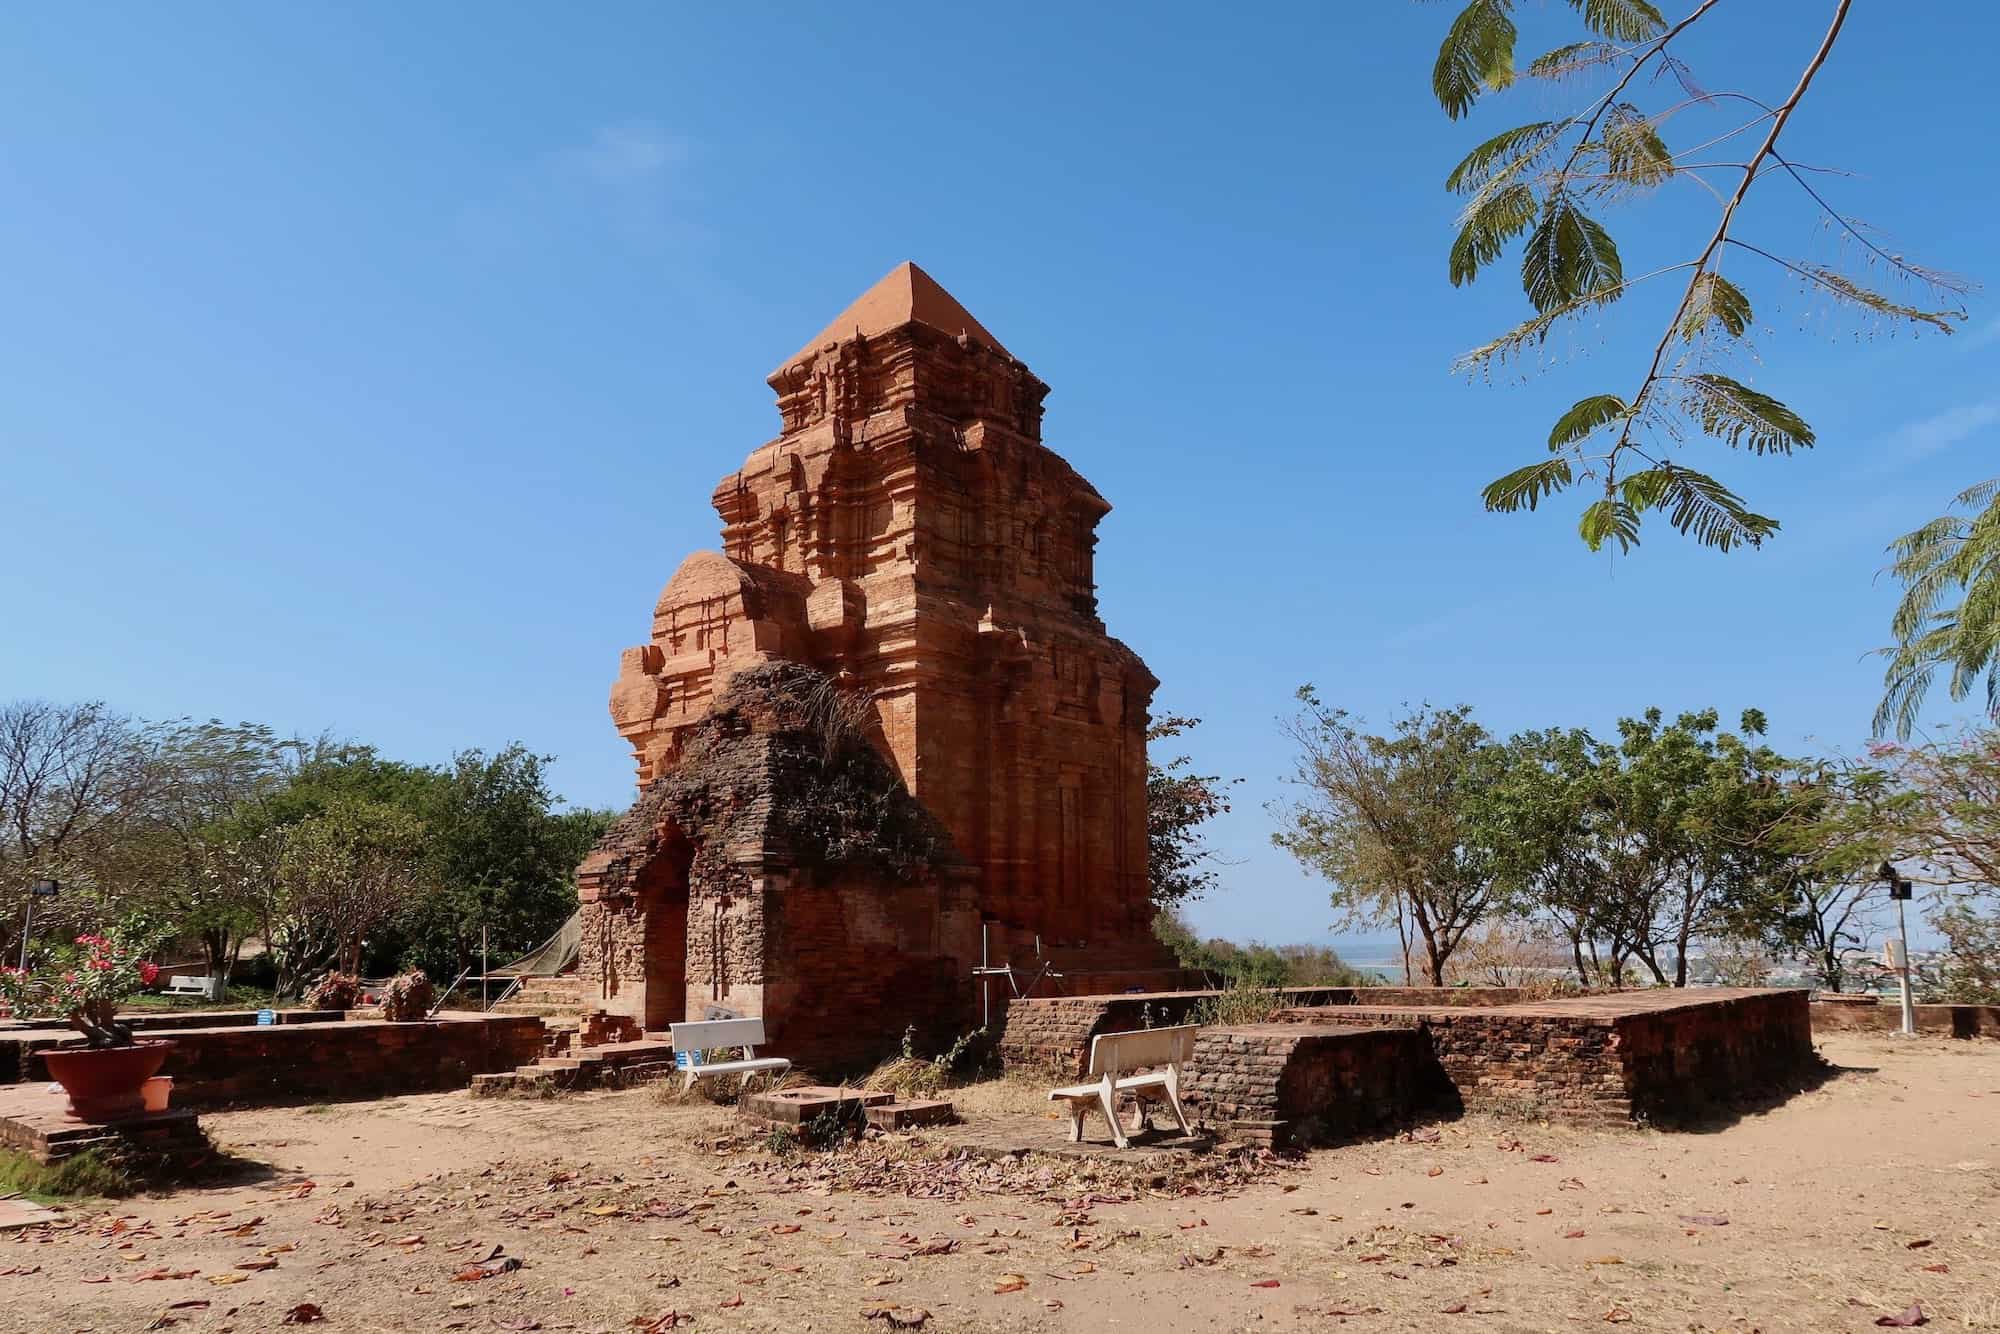 Tháp Phú Hài: Phan Thiet’s Po Shanu Cham Tower Ruins